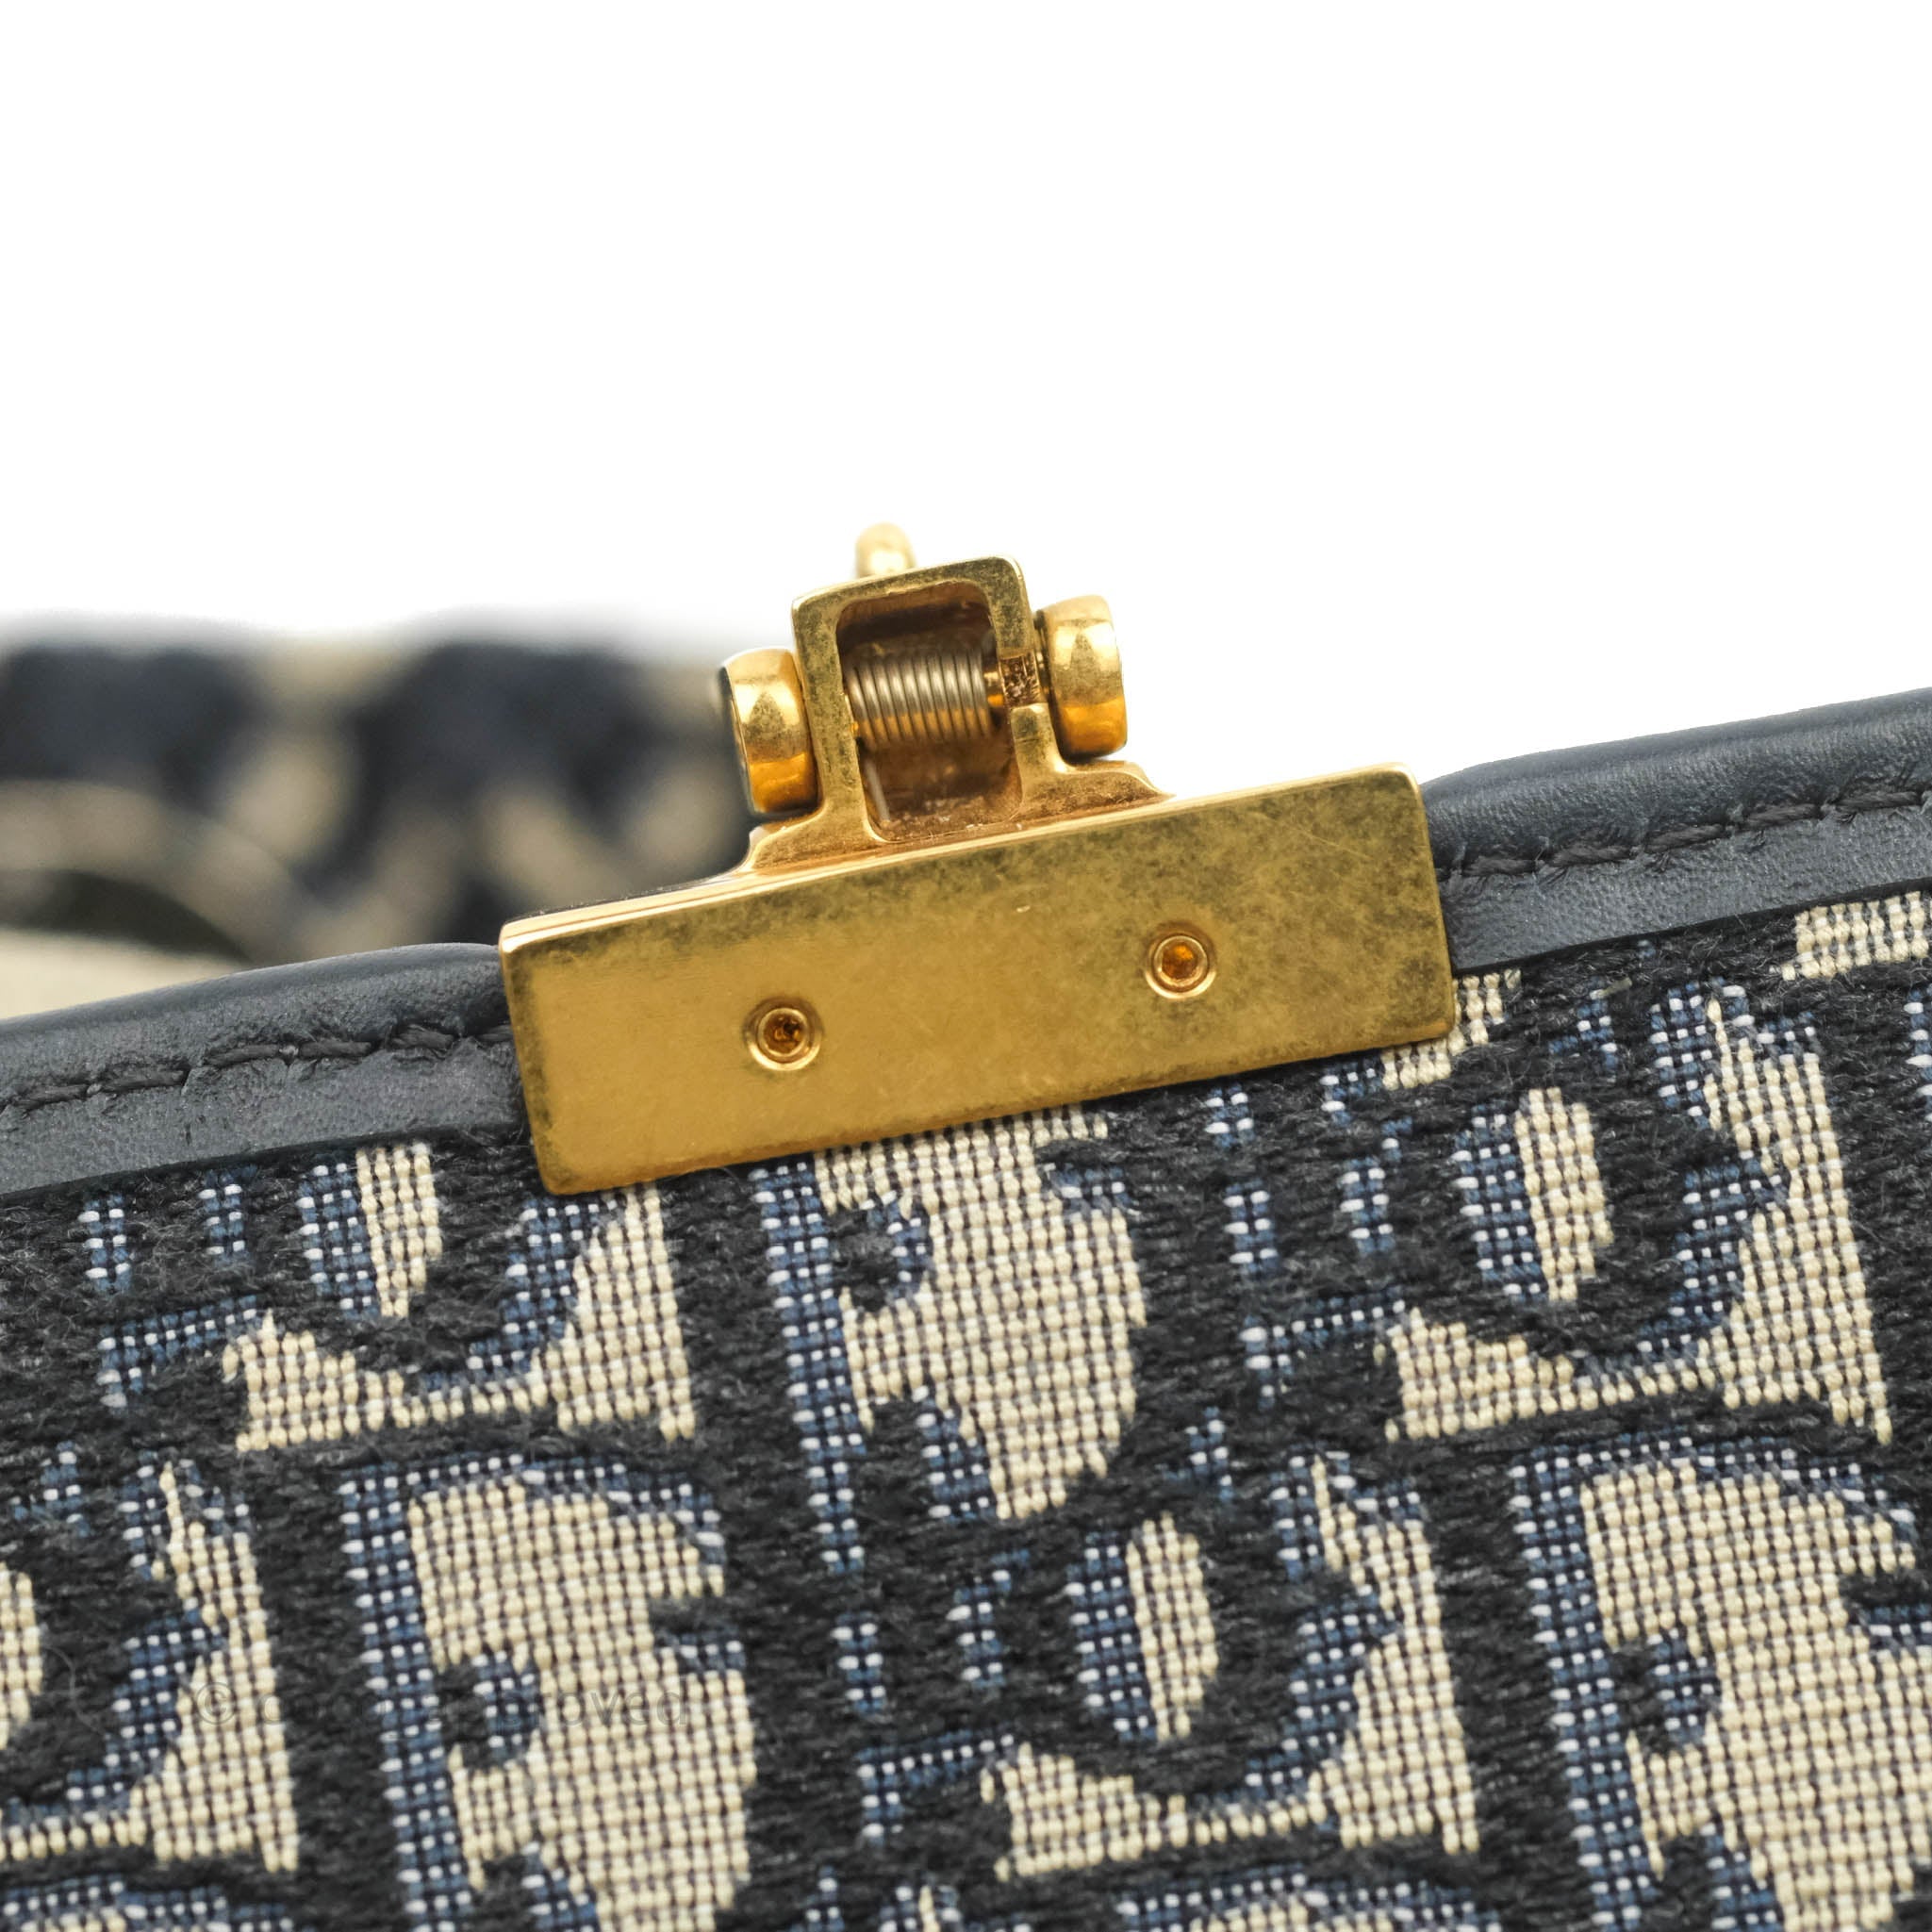 Dior Duffle Bag - Oblique, Part of 2019 Collection (Ret. 3300$)